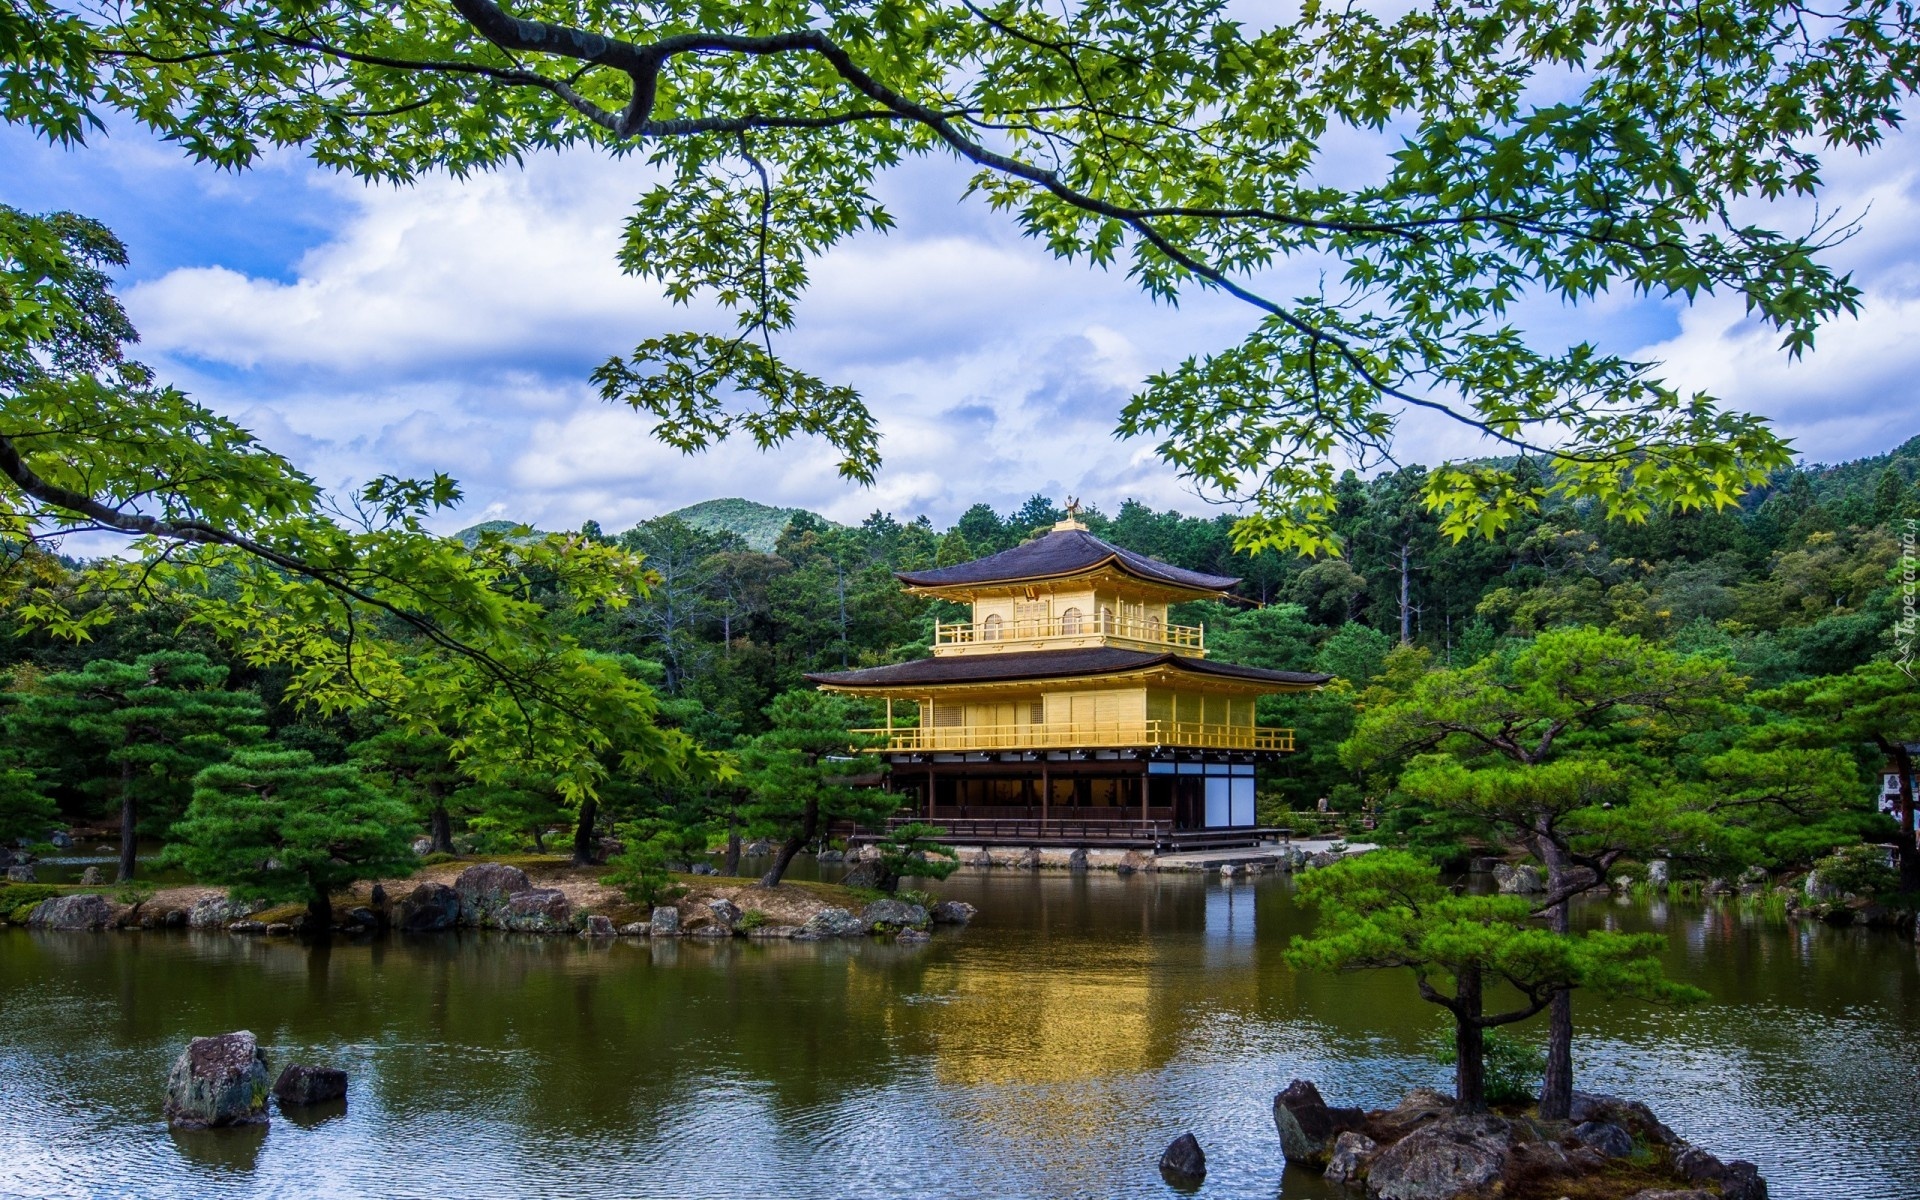 Złoty, Pawilon, Kioto, Japonia, Staw